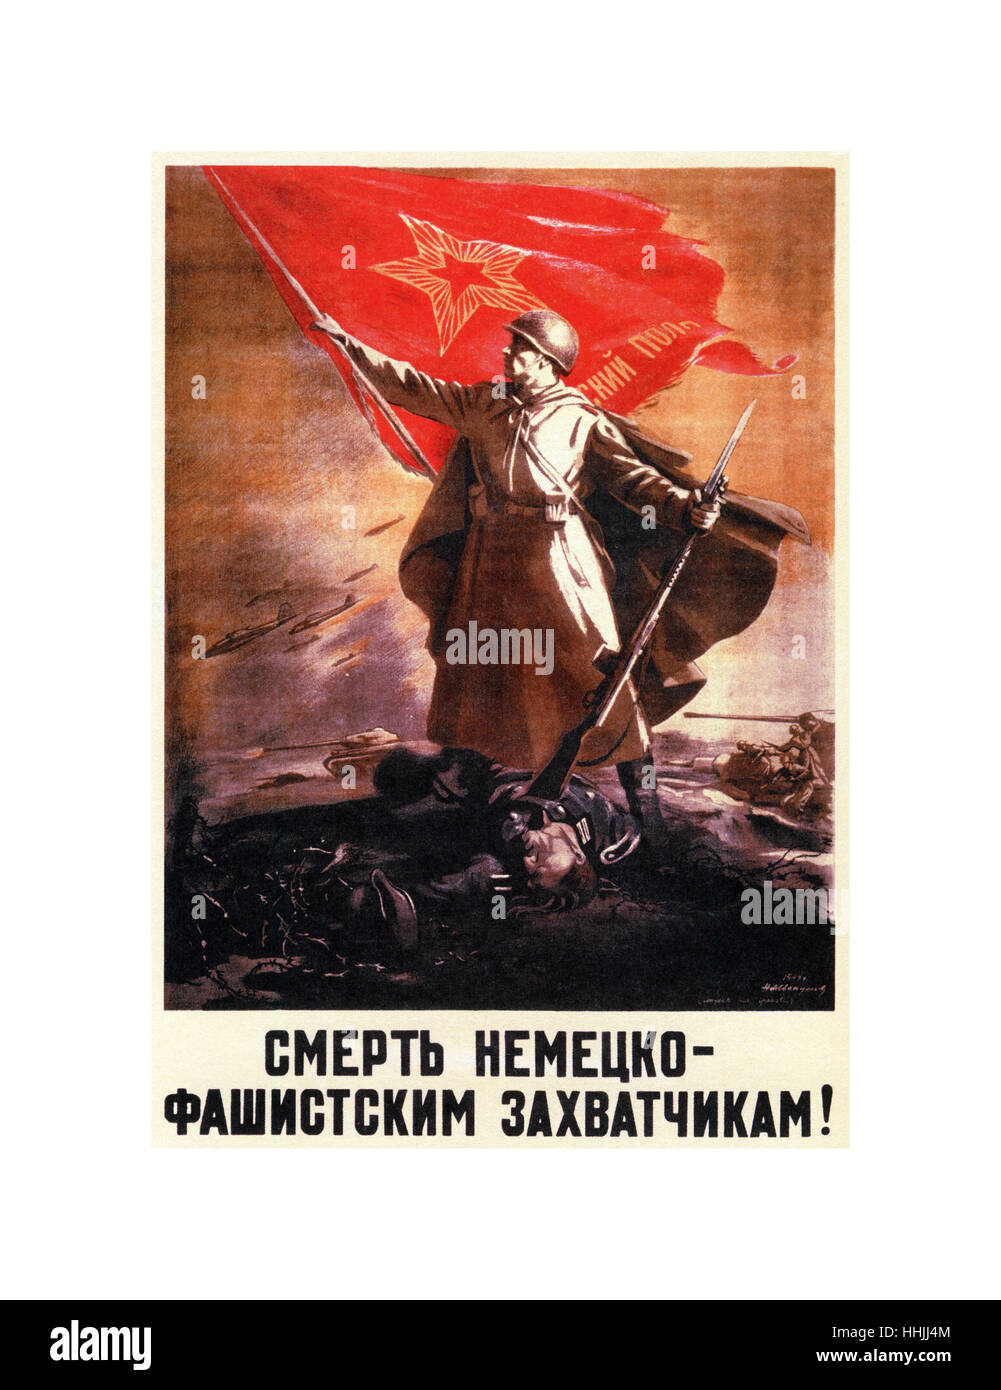 WW2 propagande russe affiche représentant un soldat russe tenant un drapeau militaire rouge tout en gardant un soldat allemand sur le sol avec une carabine. Sous-titre suivant : "mort aux envahisseurs allemands' Facist Banque D'Images